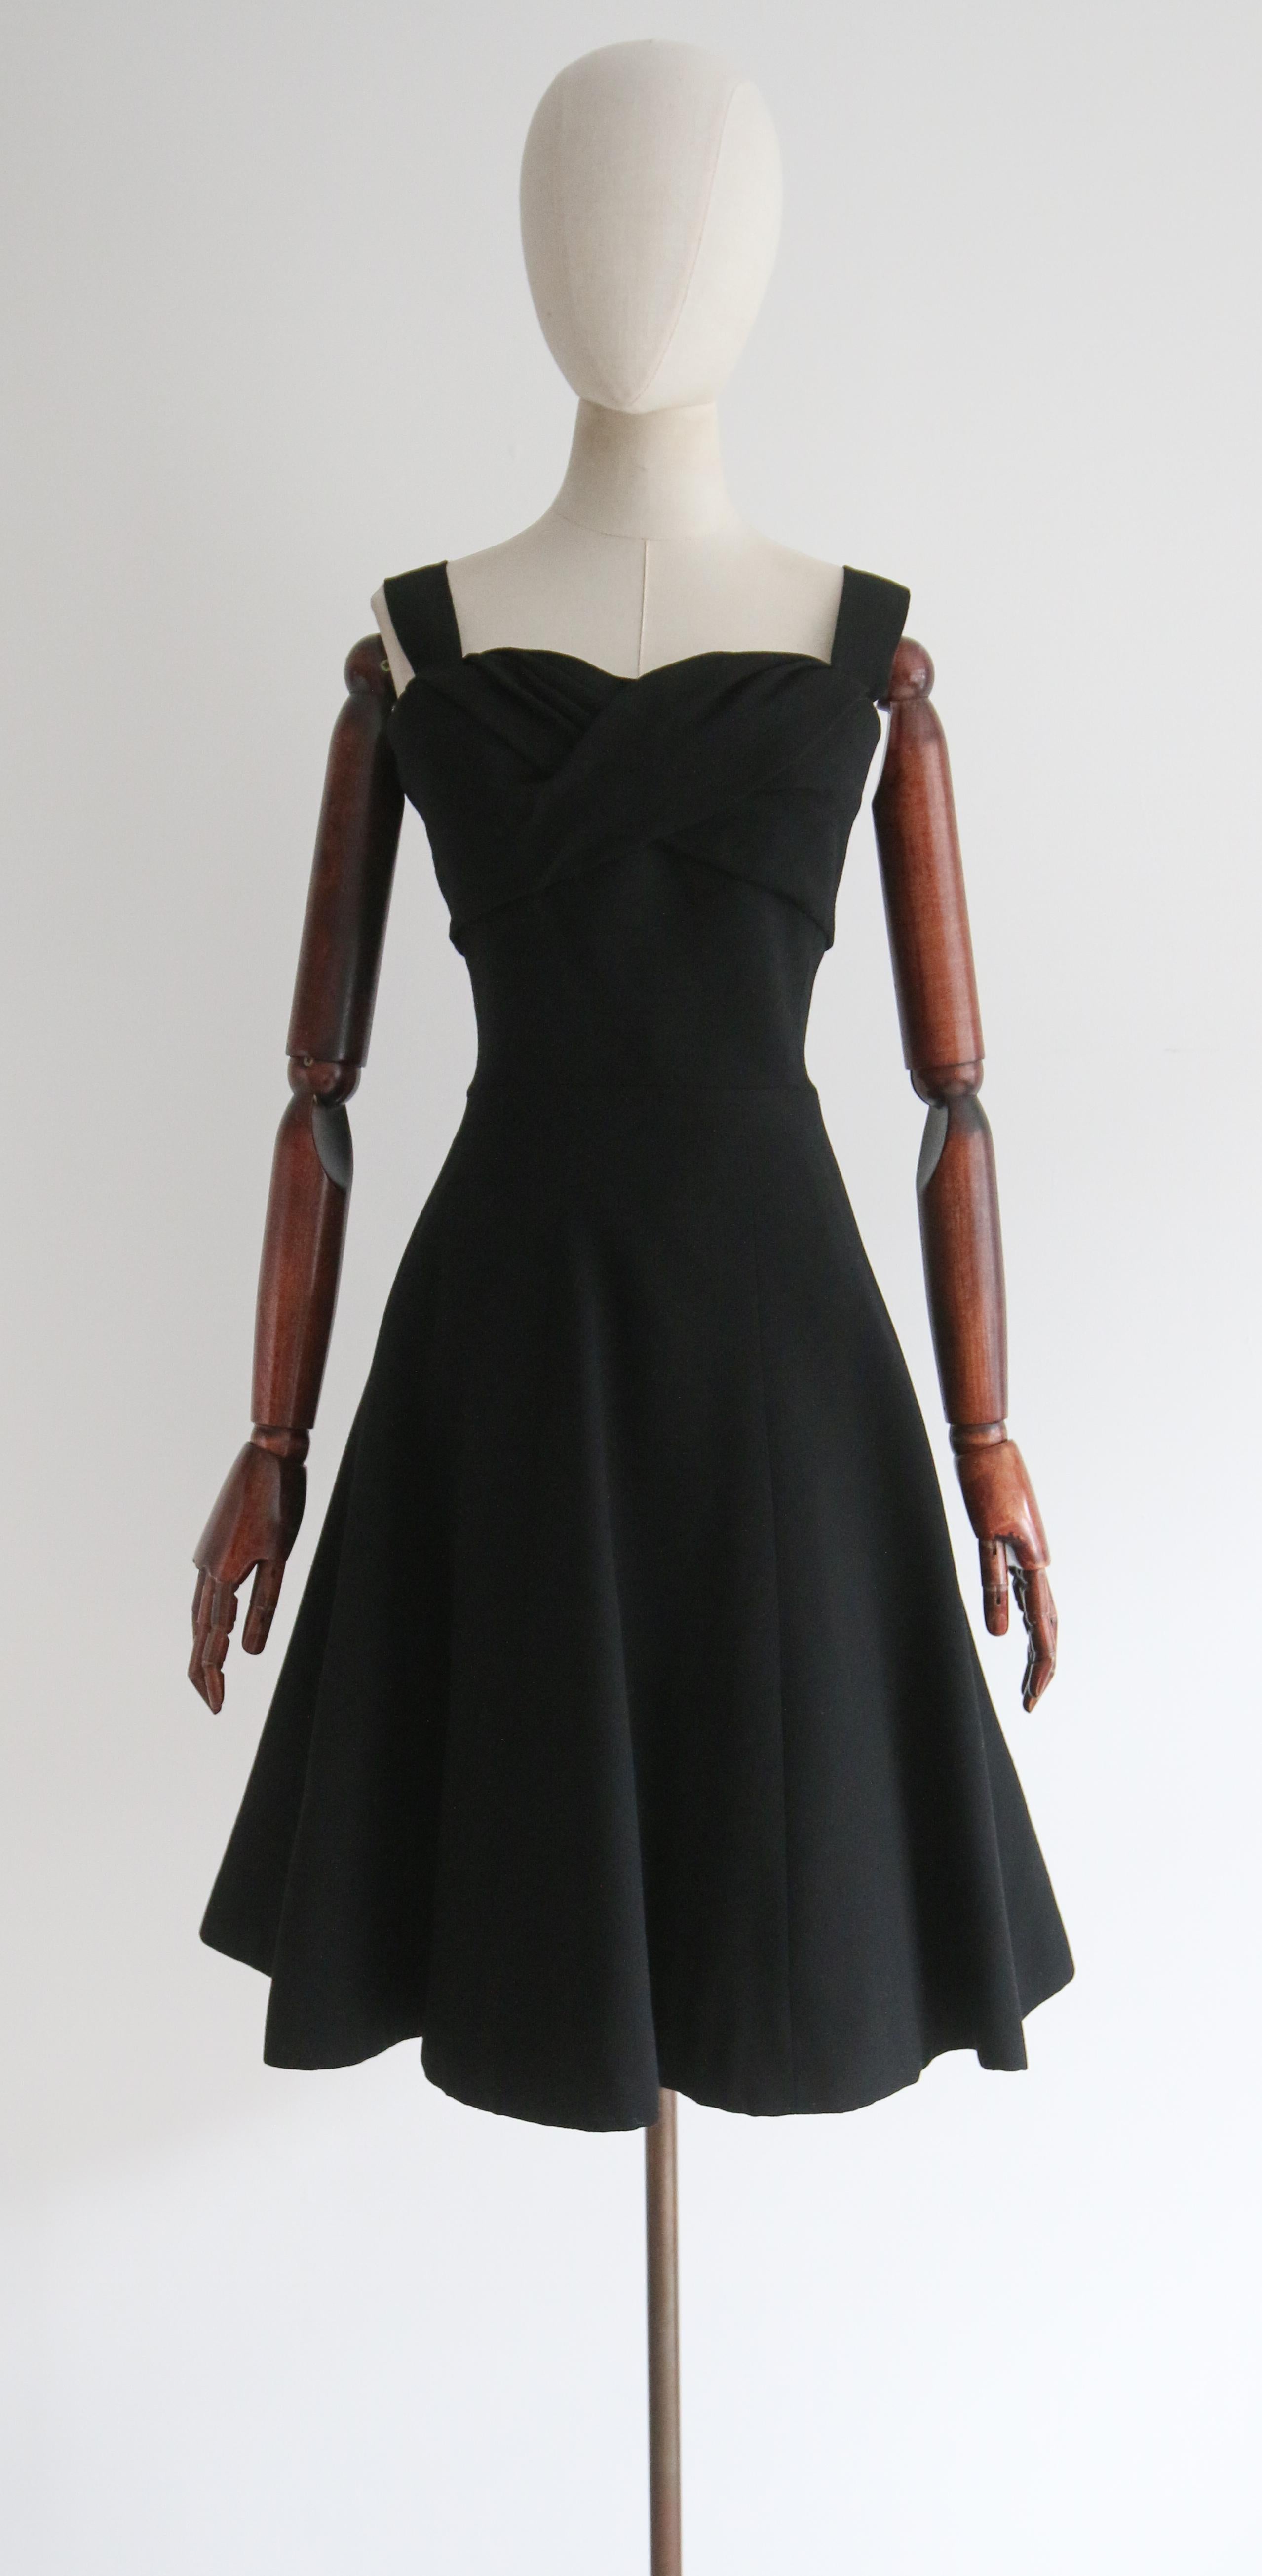 Dieses seltene Kleid von Christian Dior aus den späten 1950er Jahren aus tiefschwarzem Wollkrepp zeigt die ikonische Silhouette der Epoche und ist bis heute ein klassisches und zeitloses Design. 

Der runde, herzförmige Ausschnitt wird von breiten